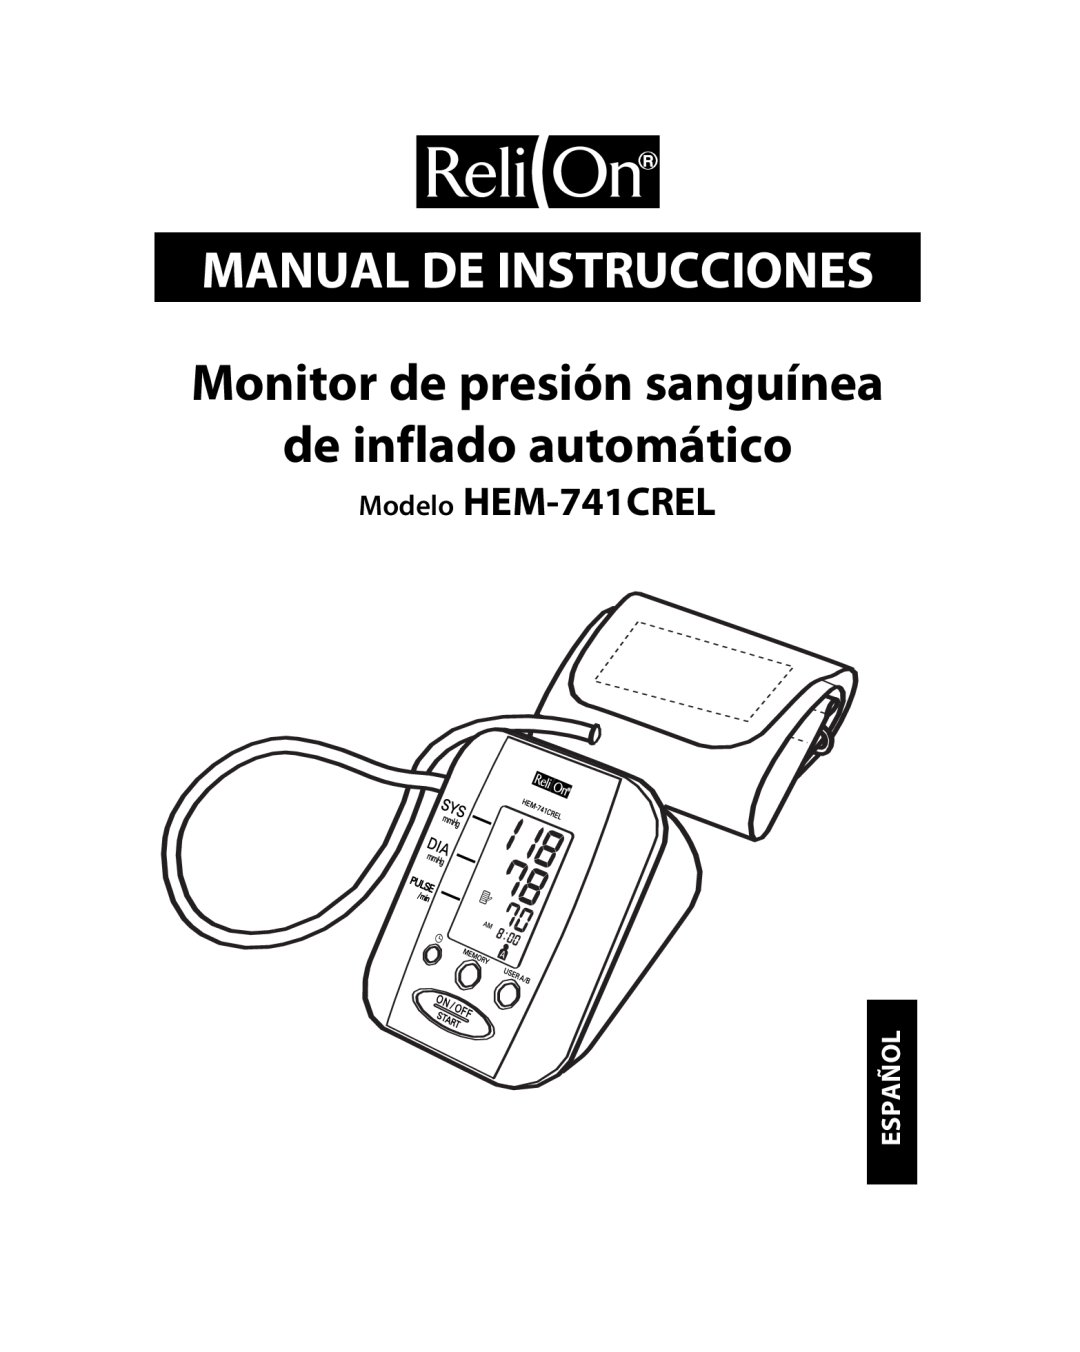 Omron Healthcare HEM-741CREL manual Manual De Instrucciones, Monitor de presión sanguínea de inflado automático, Español 